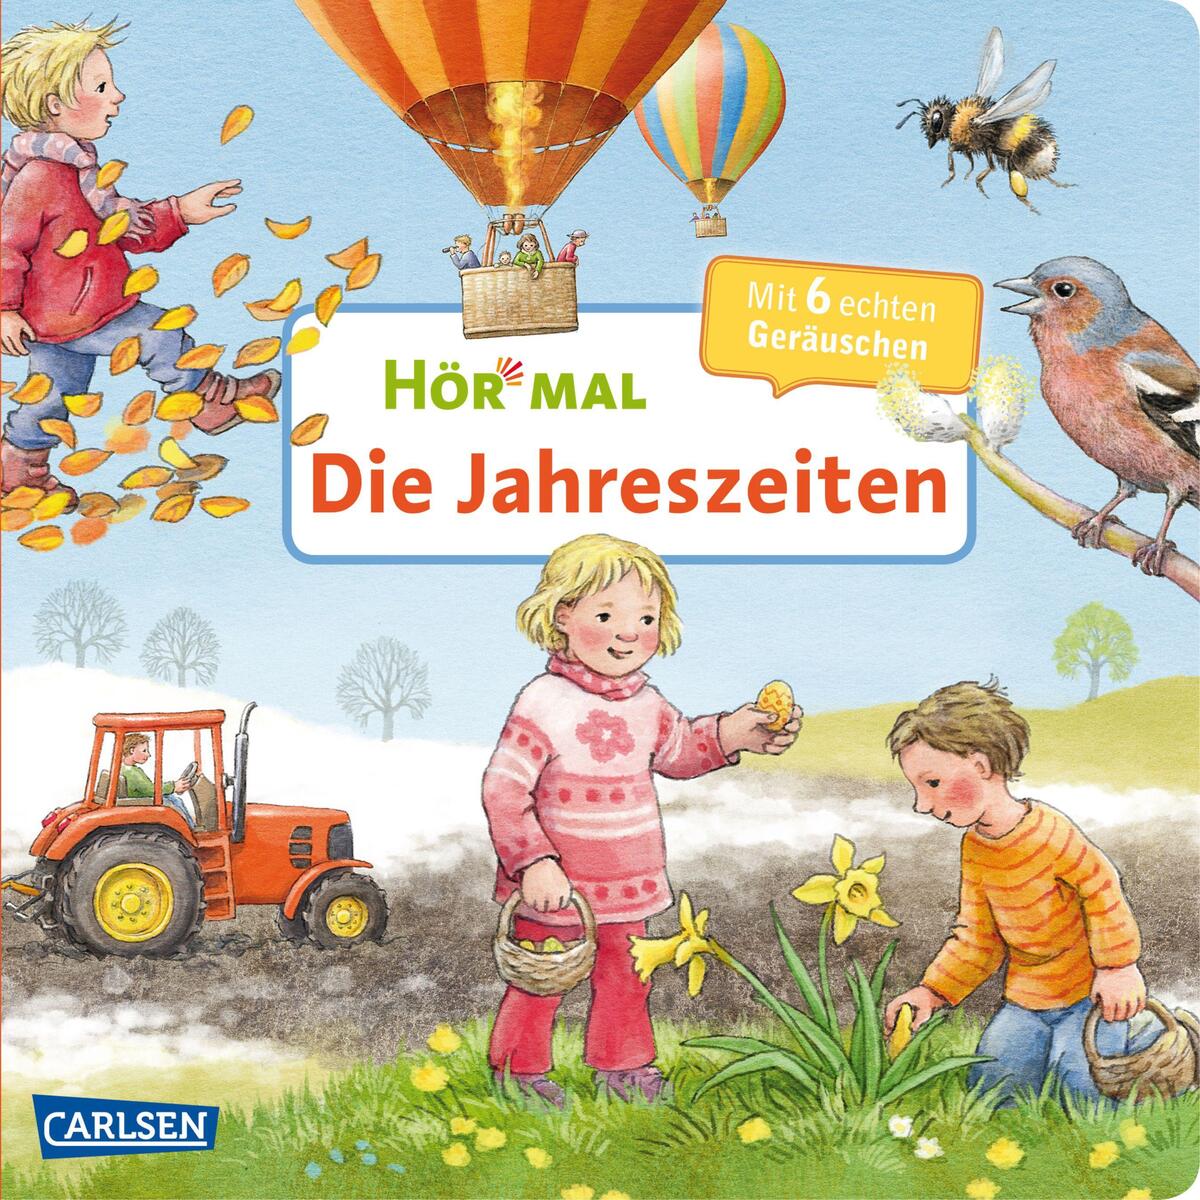 Hör mal (Soundbuch): Die Jahreszeiten von Carlsen Verlag GmbH